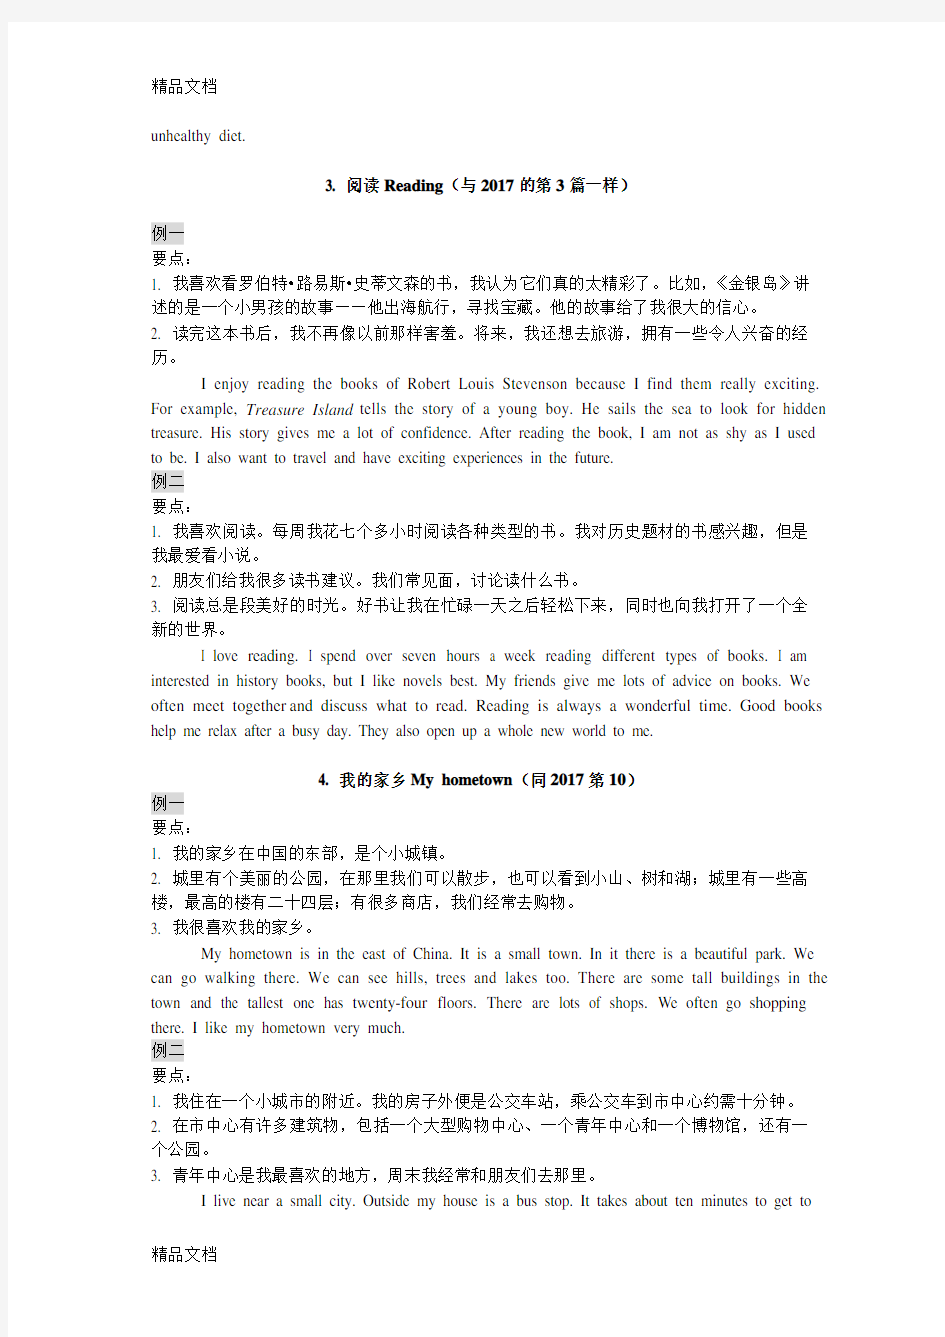 最新年江苏省人机对话考试口语训练材料(话题简述)资料